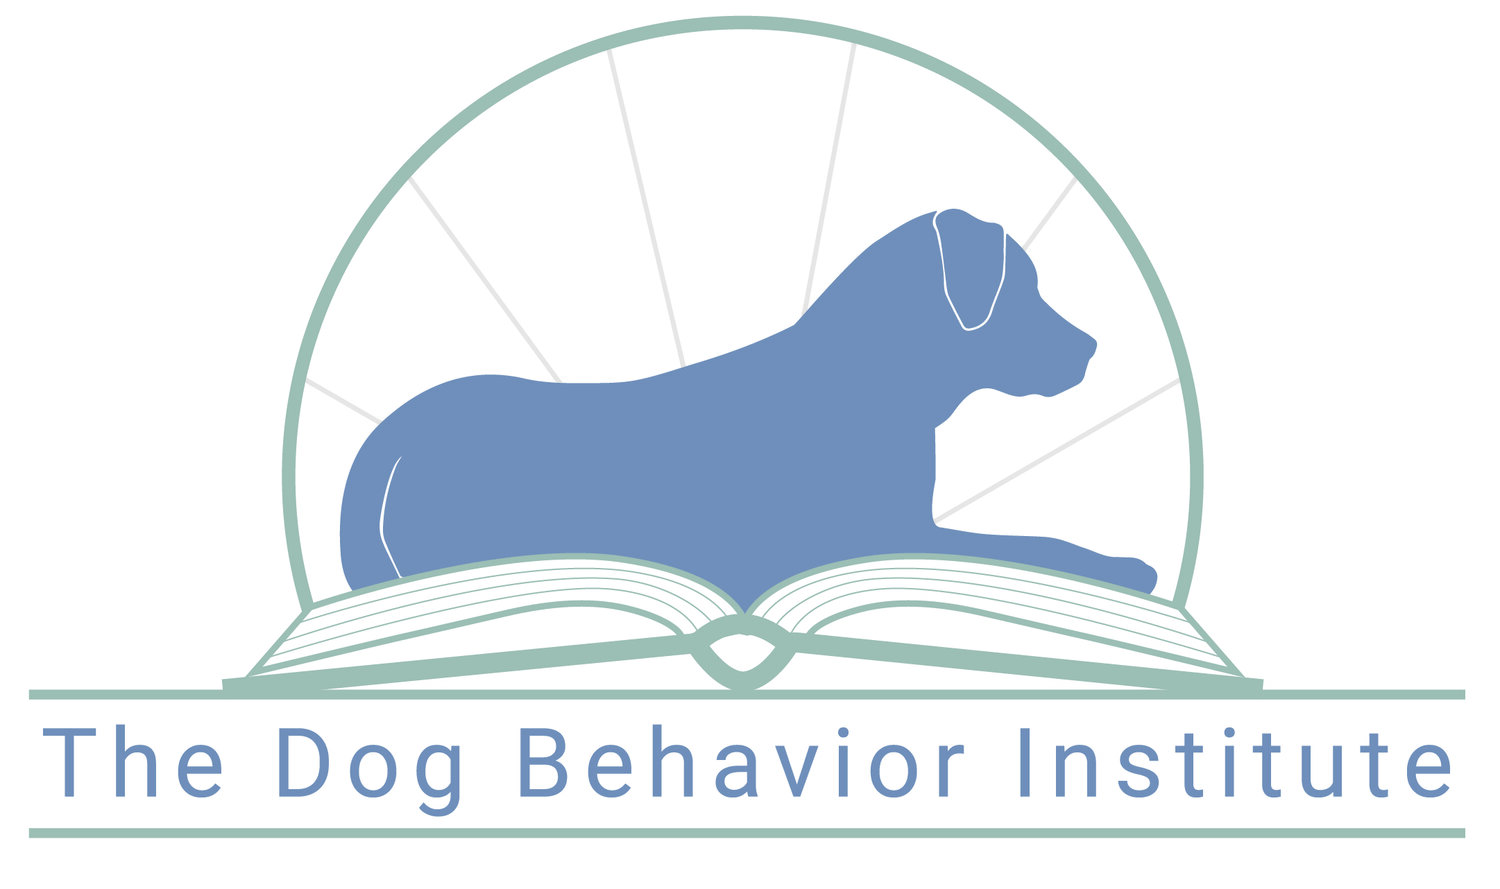 The Dog Behavior Institute